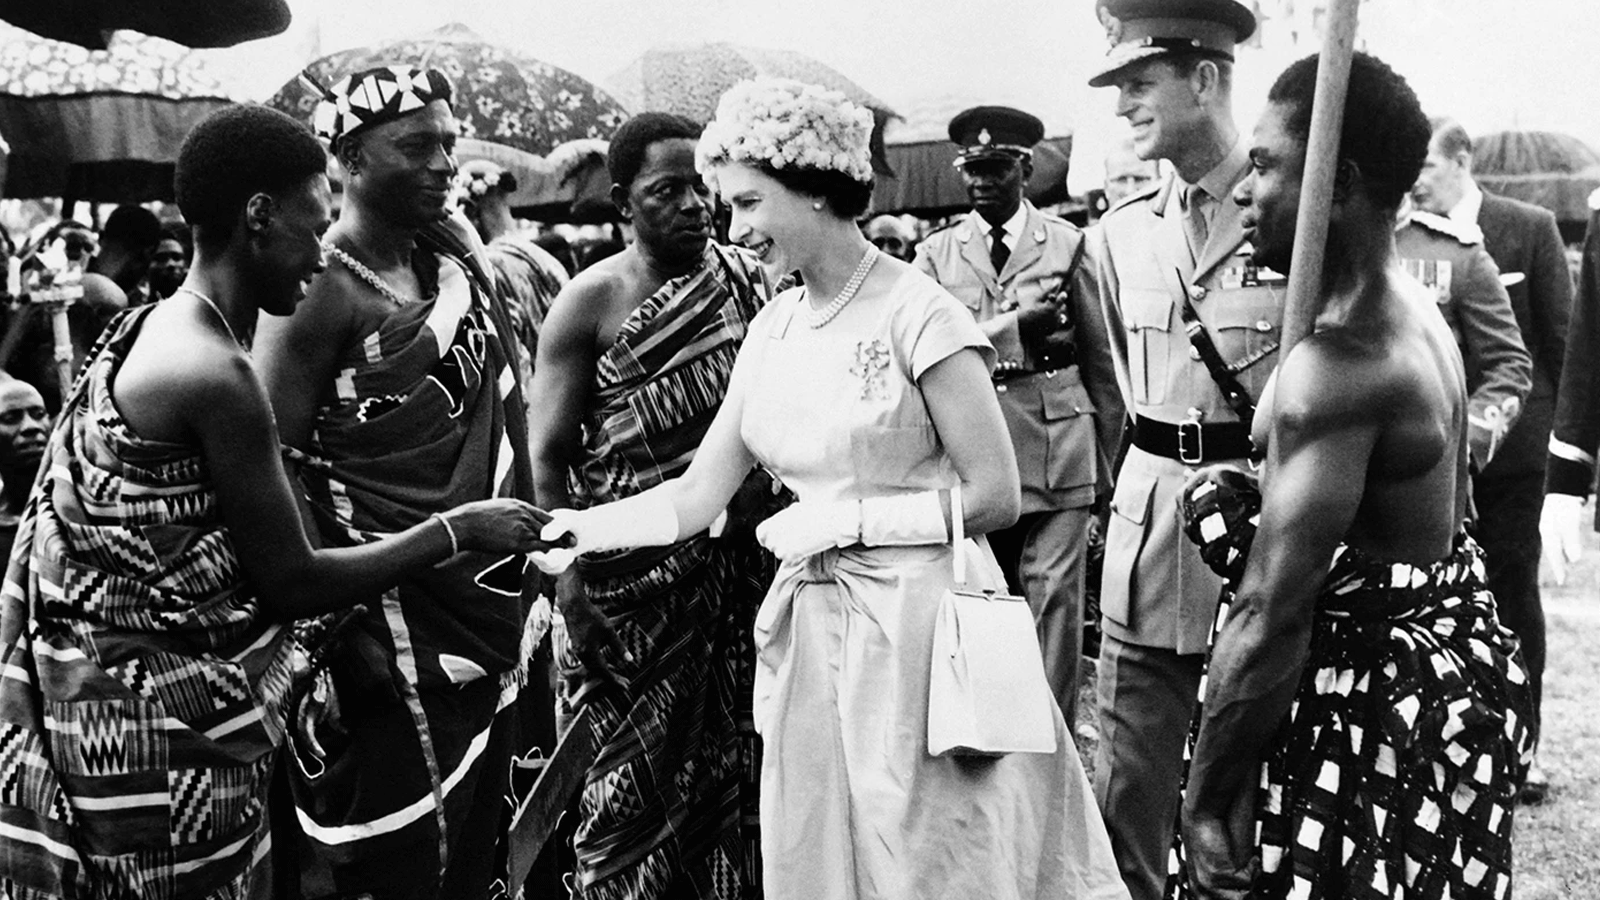 ملكة بريطانيا إليزابيث الثانية والأمير فيليب دوق إدنبرة يلتقيان بأشخاص في أكرا \ غانا كجزء من زيارة دولة في 17 تشرين الثاني\نوفمبر 1961.